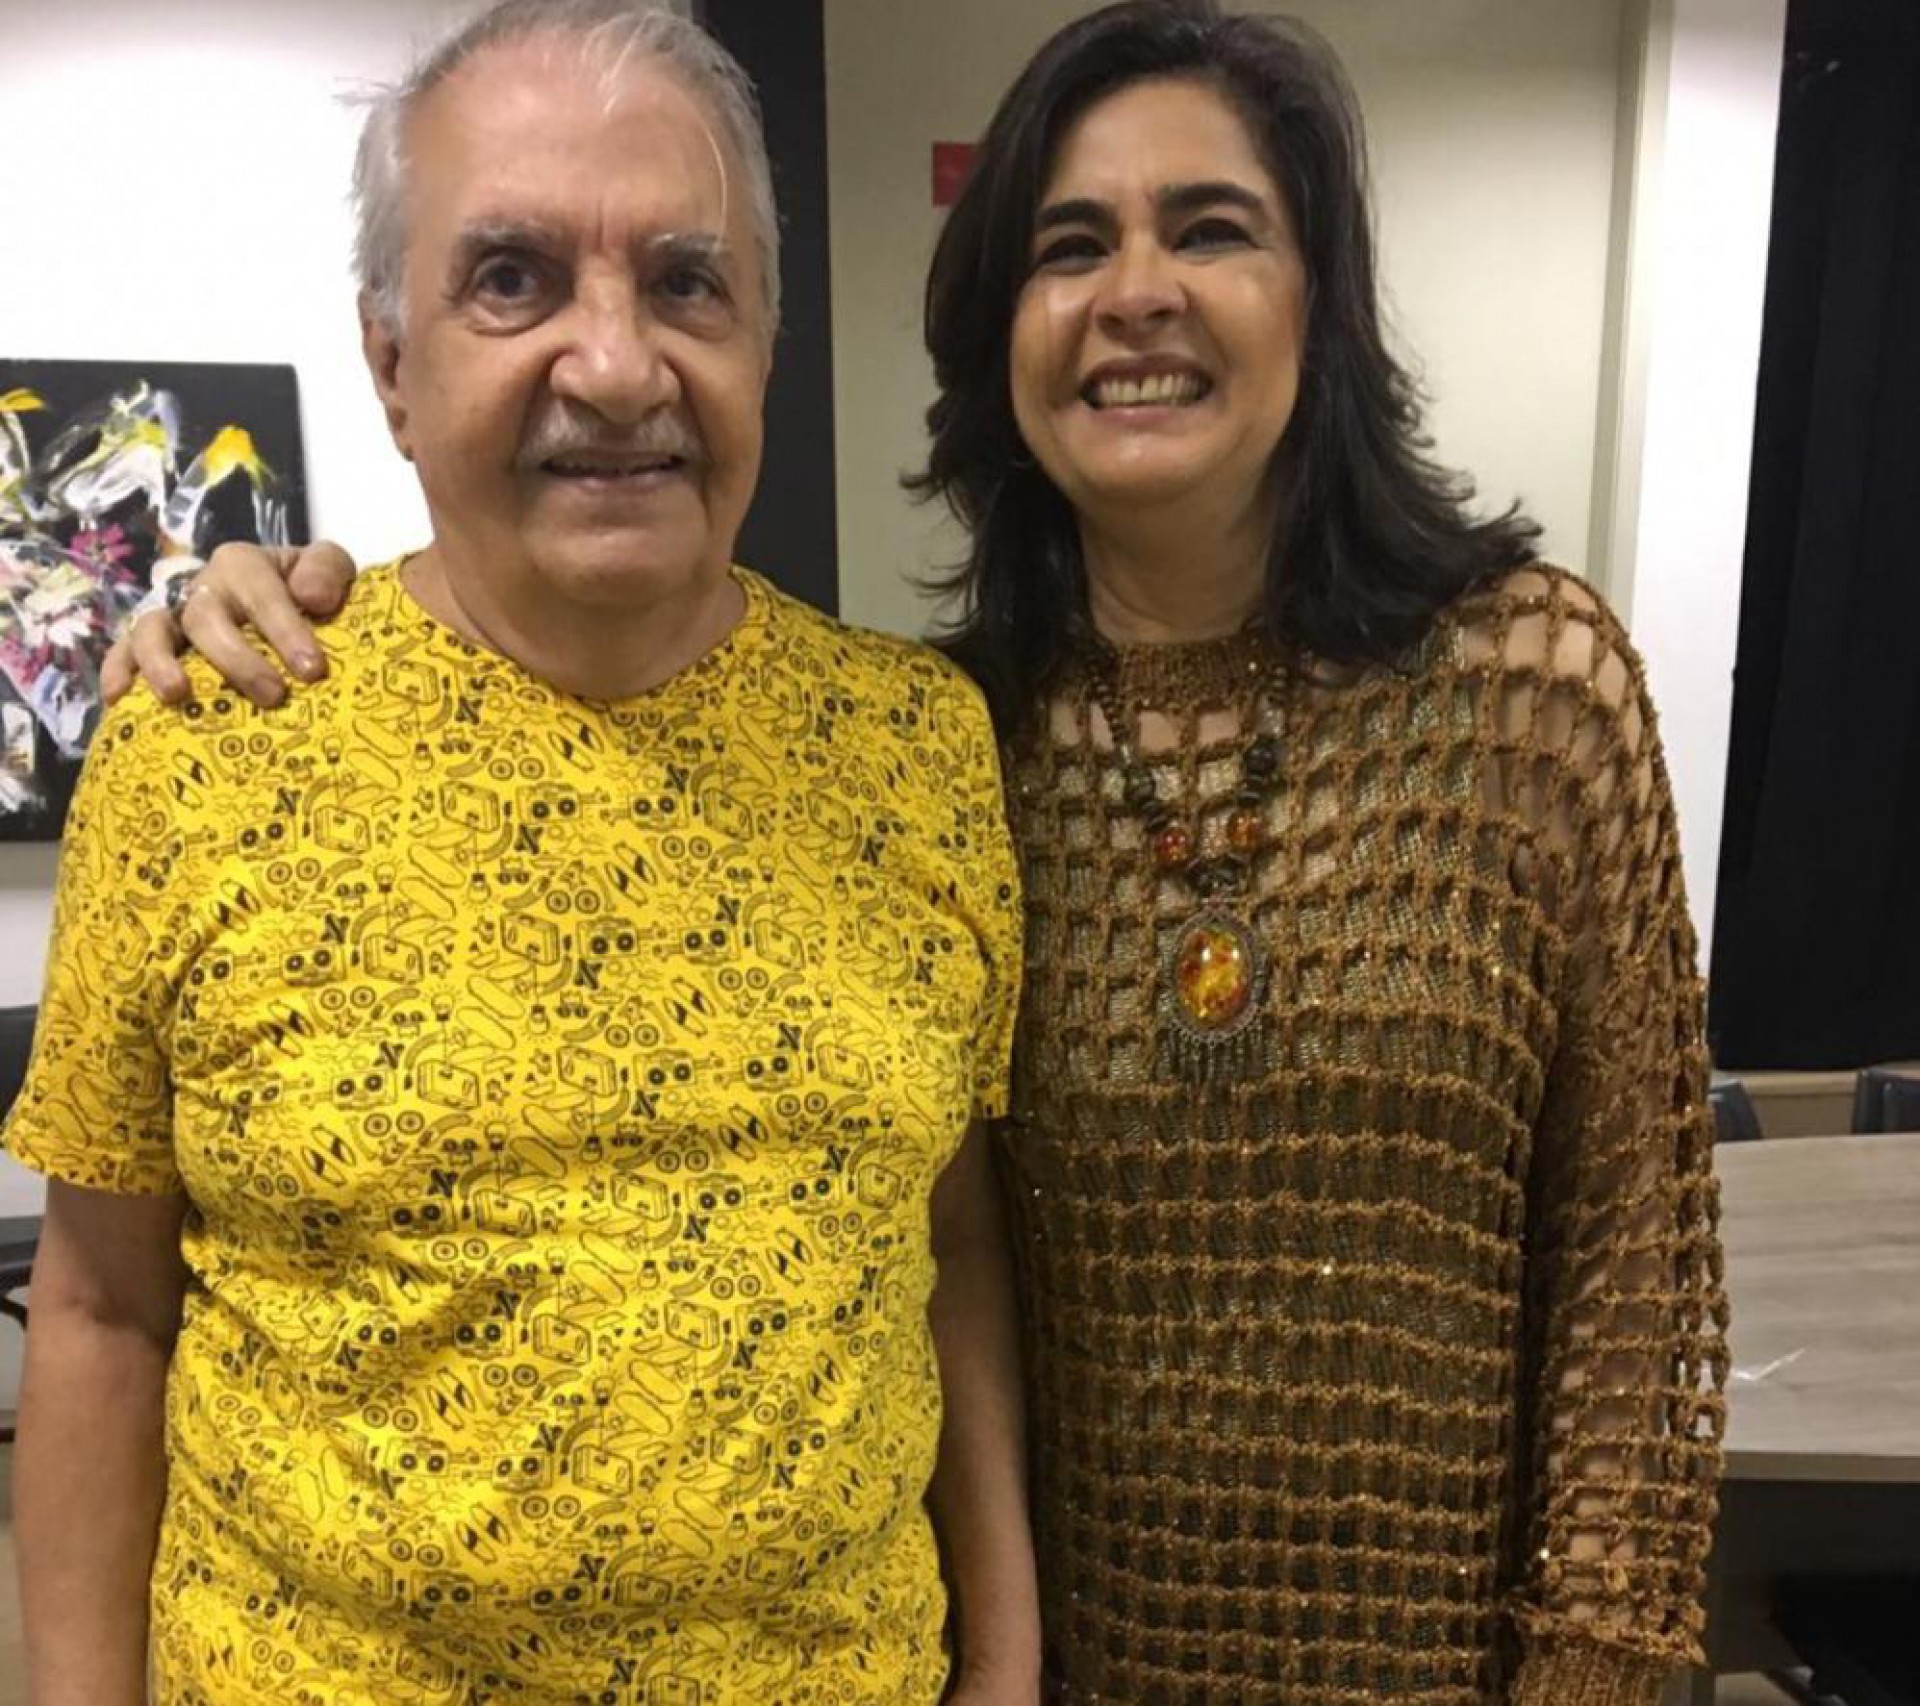 Brandão em 2018, no camarim do show "Maraponga 40 anos", com Mona Gadelha